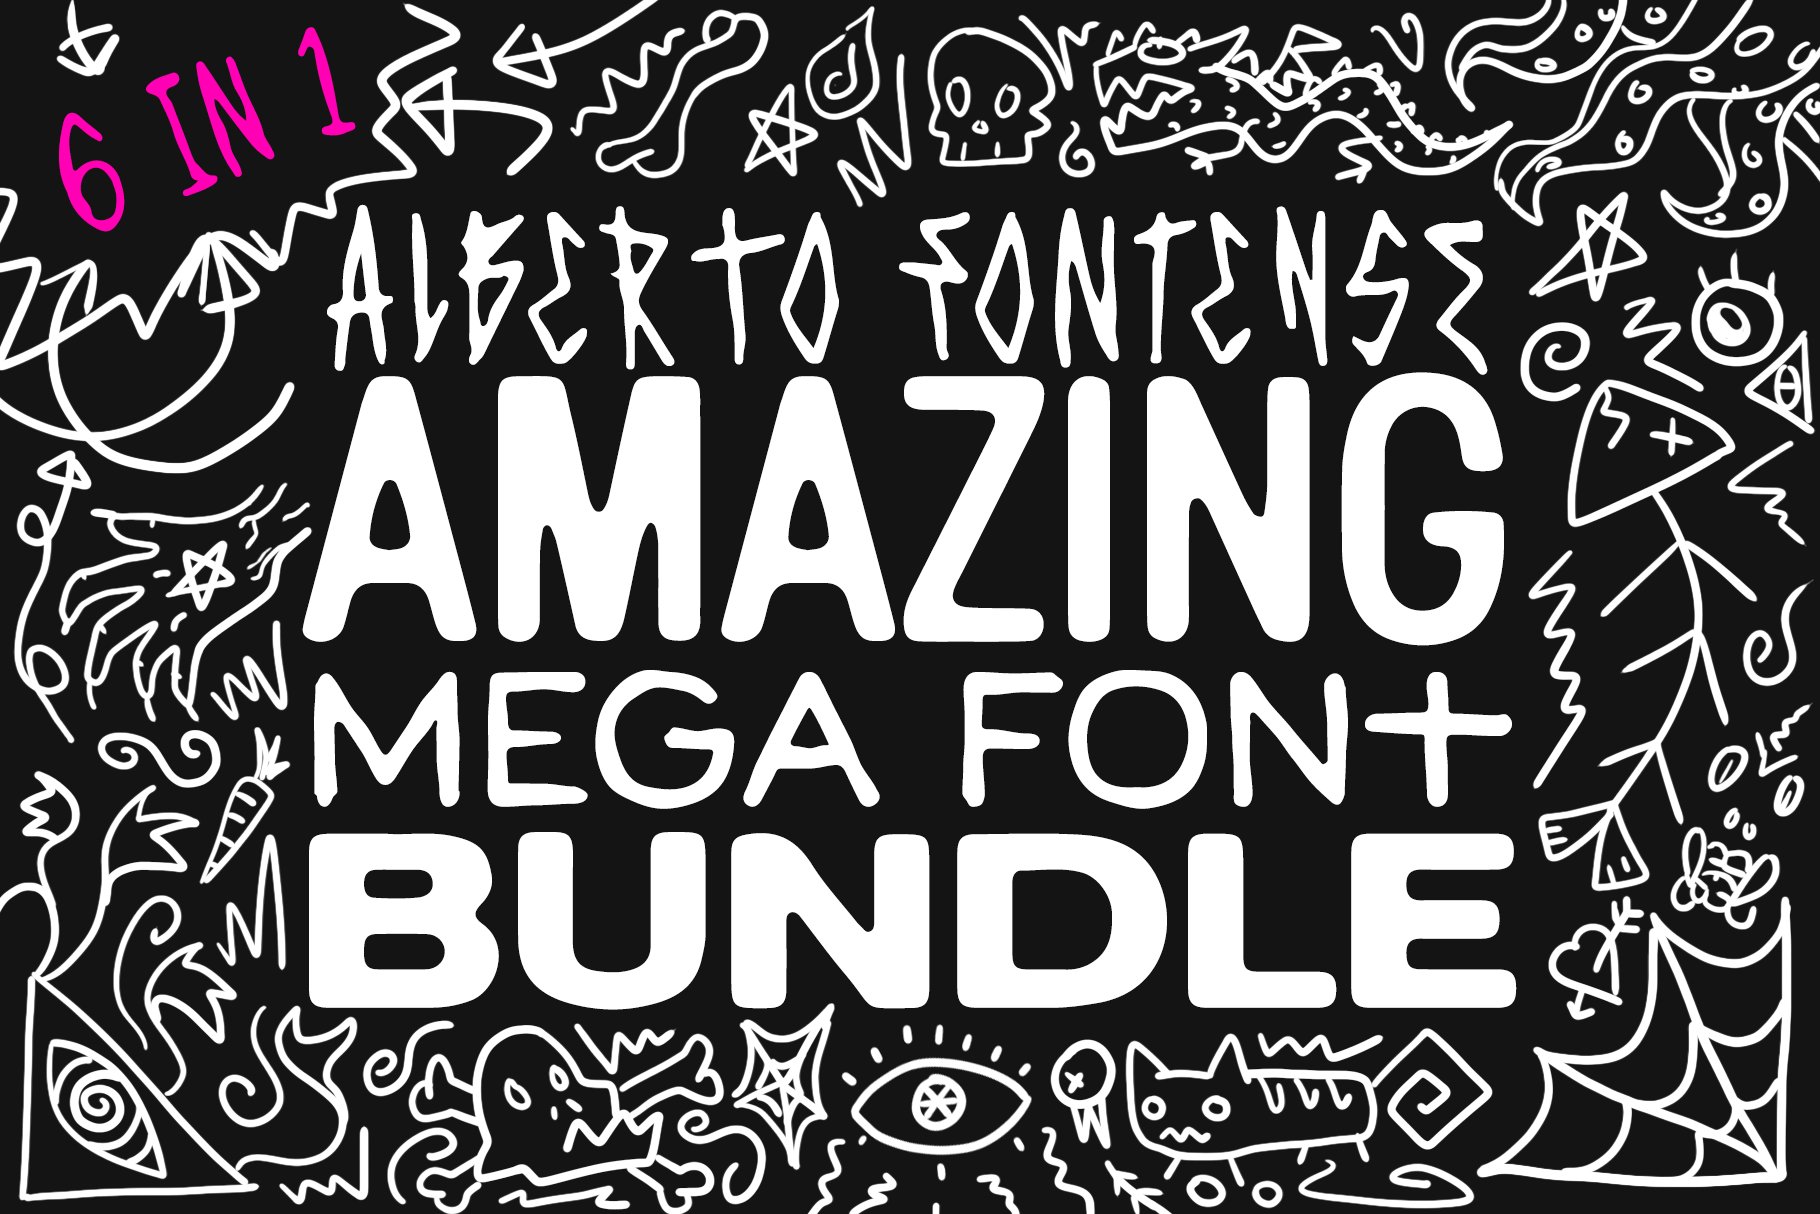 Amazing Mega Font Bundle cover image.